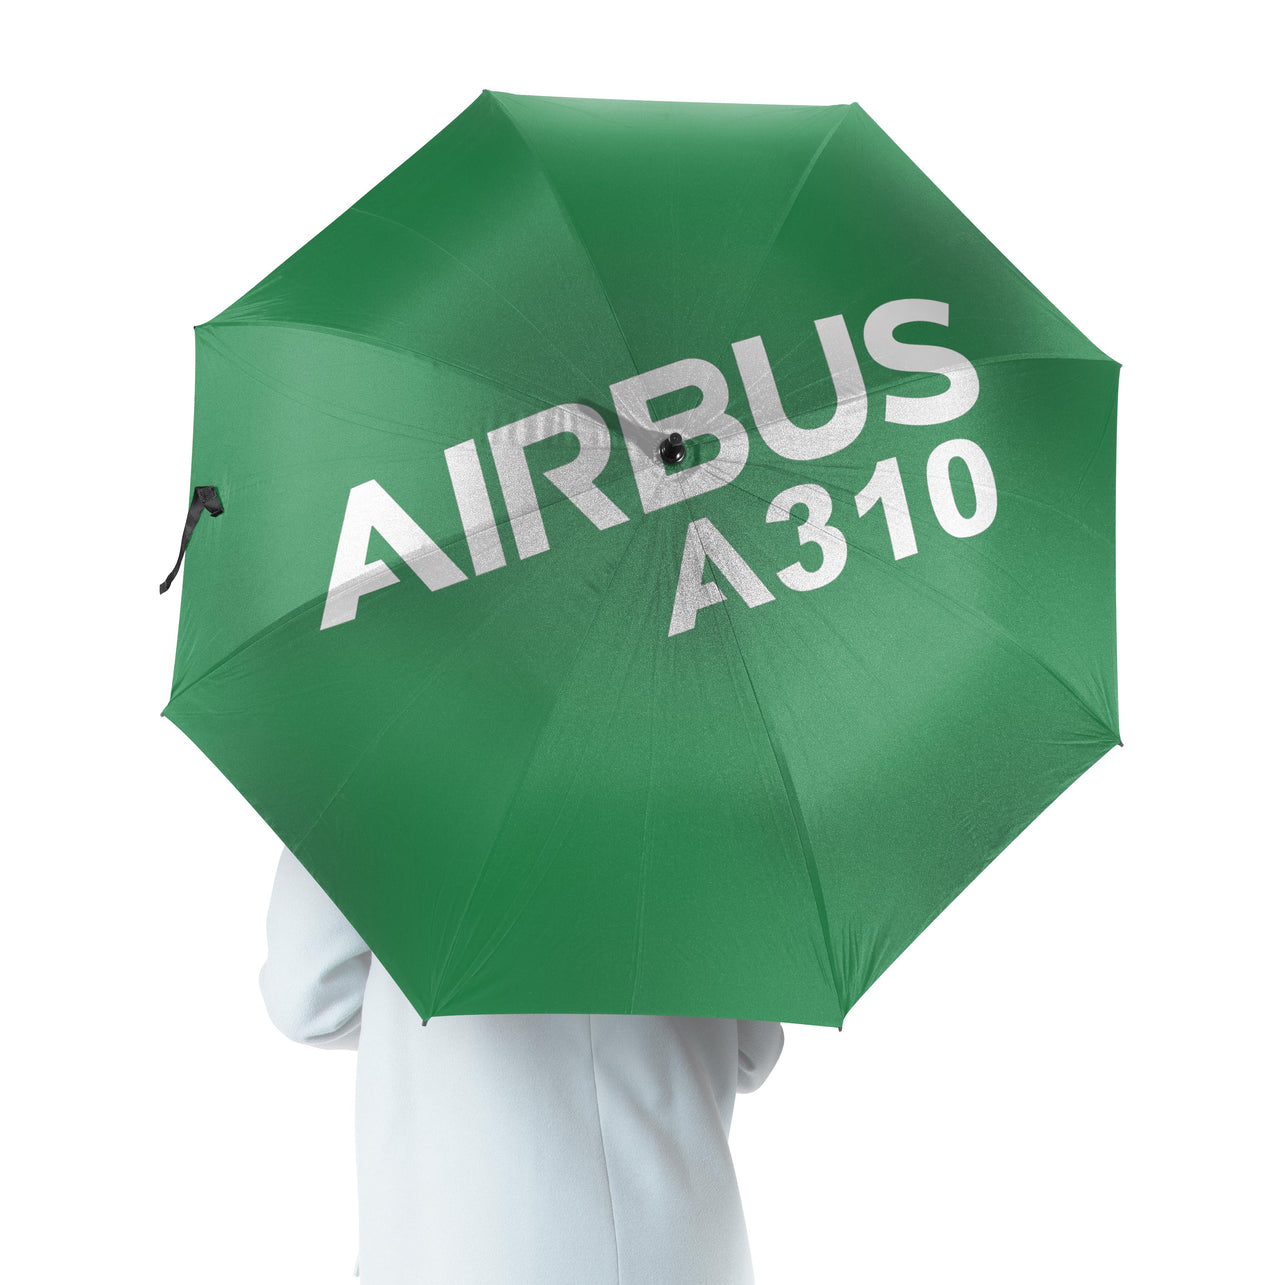 Airbus A310 & Text Designed Umbrella